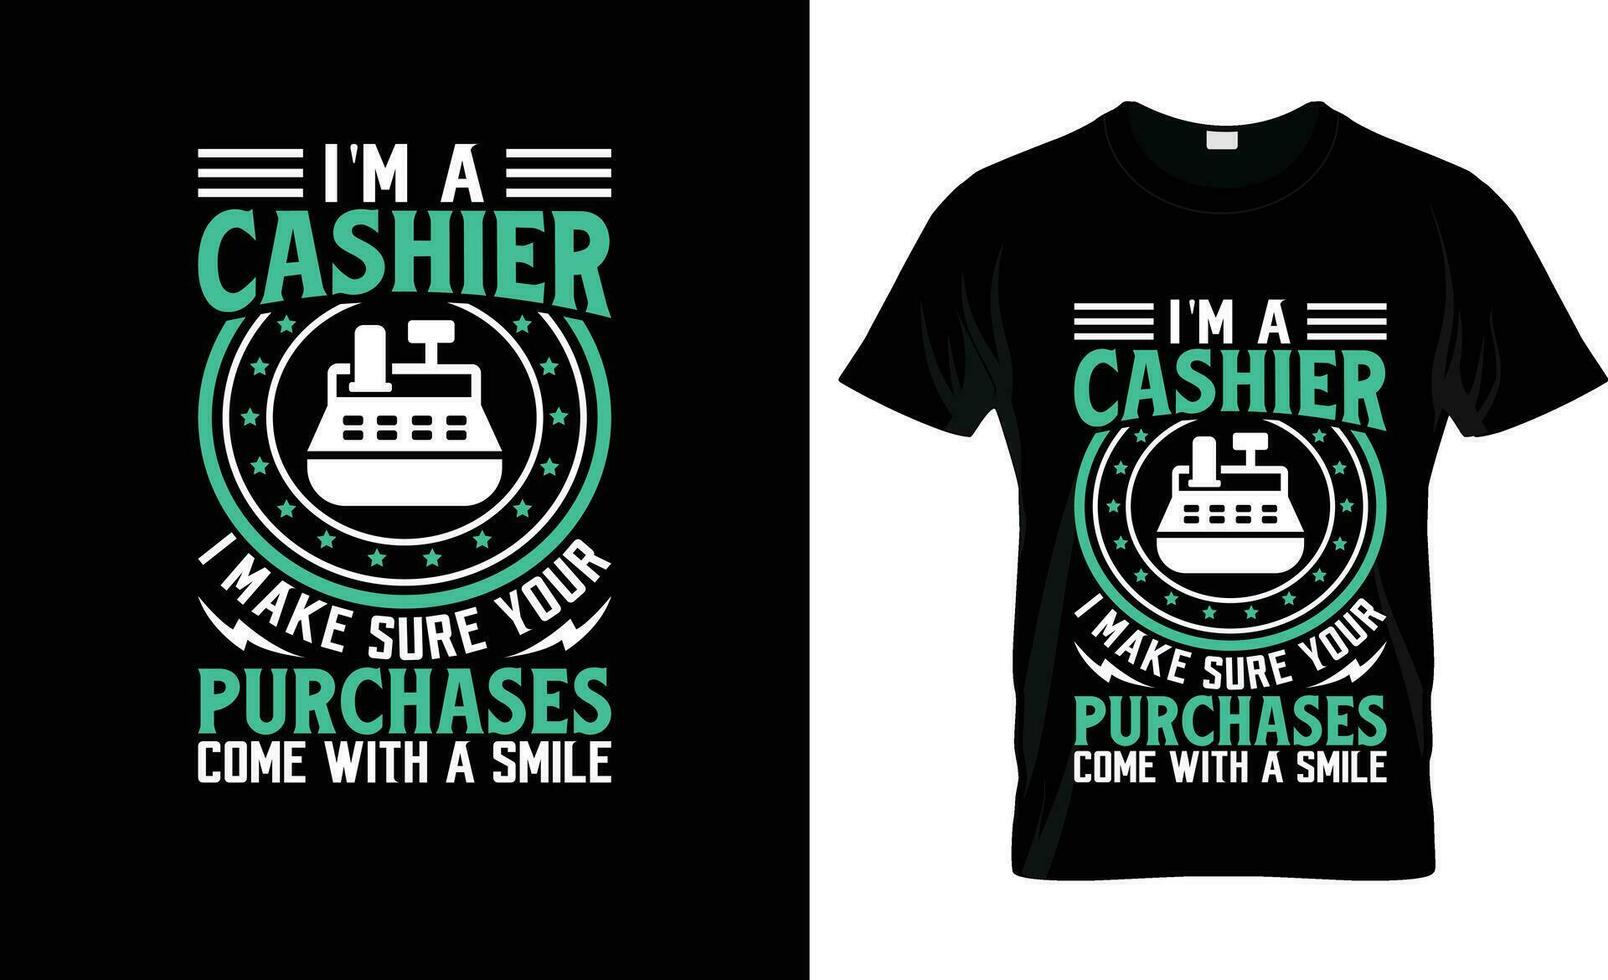 Ich bin ein Kassierer ich machen sicher Ihre Einkäufe bunt Grafik T-Shirt, T-Shirt drucken Attrappe, Lehrmodell, Simulation vektor